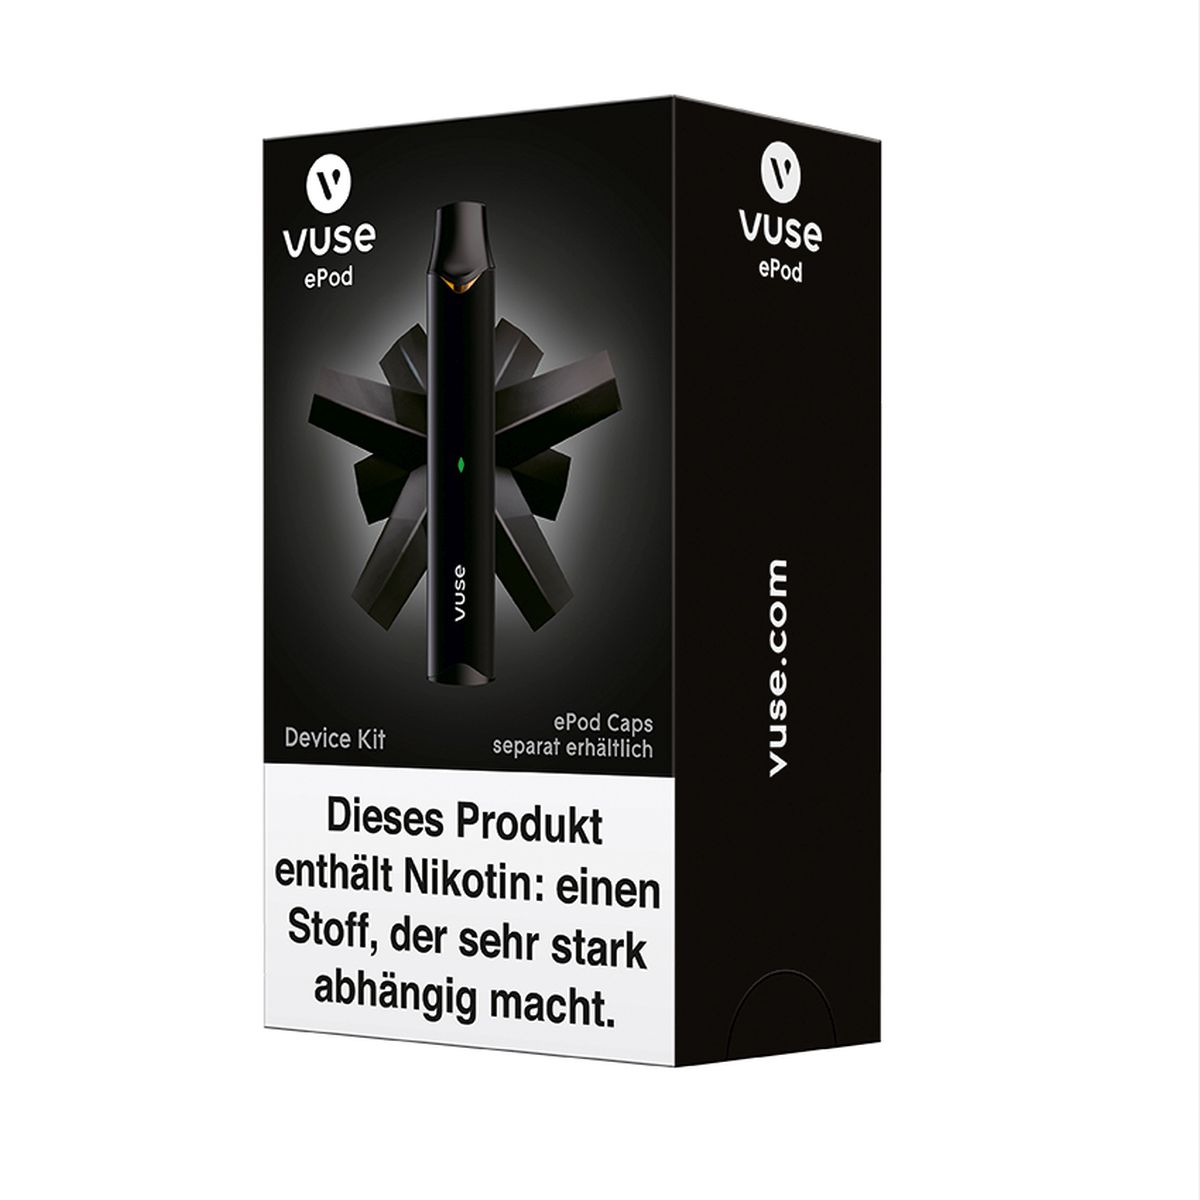 Vuse Vuse ePod Device Kit Schwarz bei www.Tabakring.de kaufen